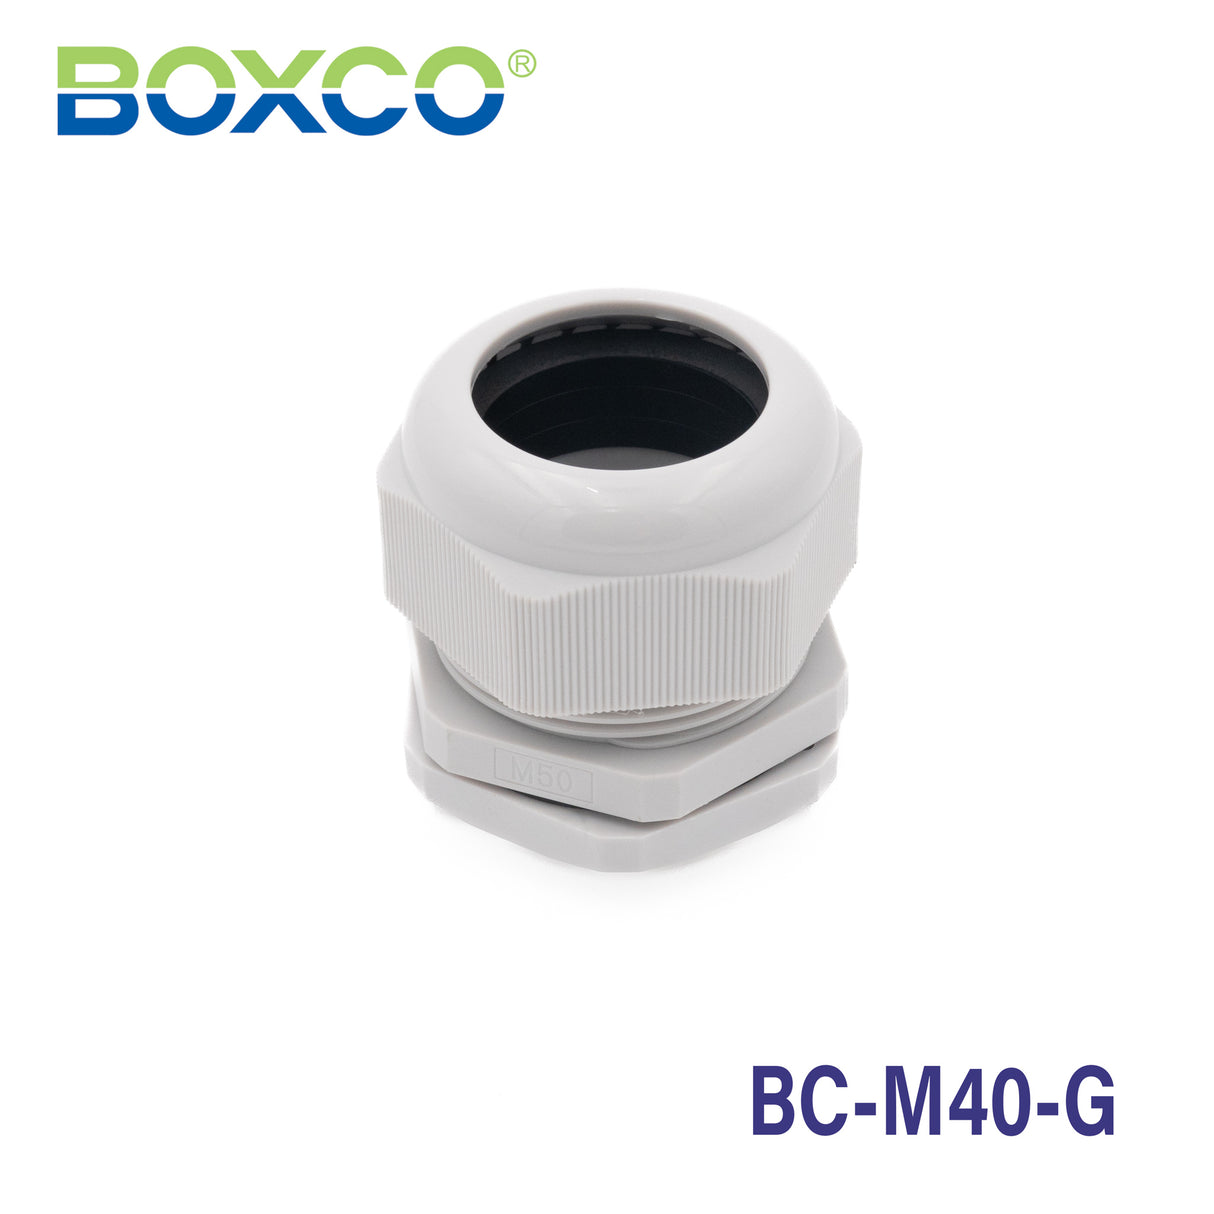 Boxco Plastic Cable Gland BC-M40-G